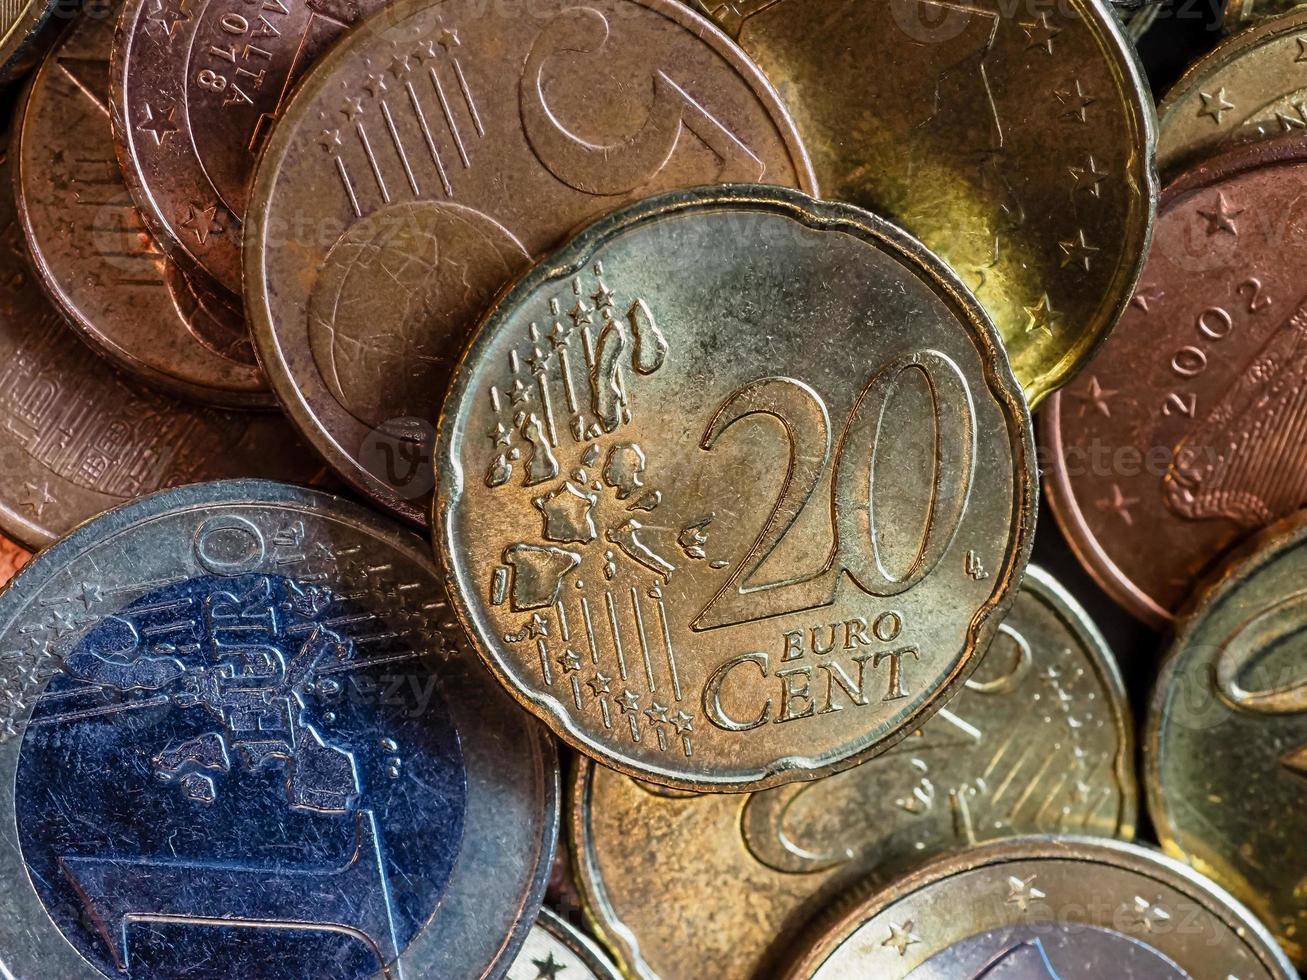 moedas de euro, união europeia foto